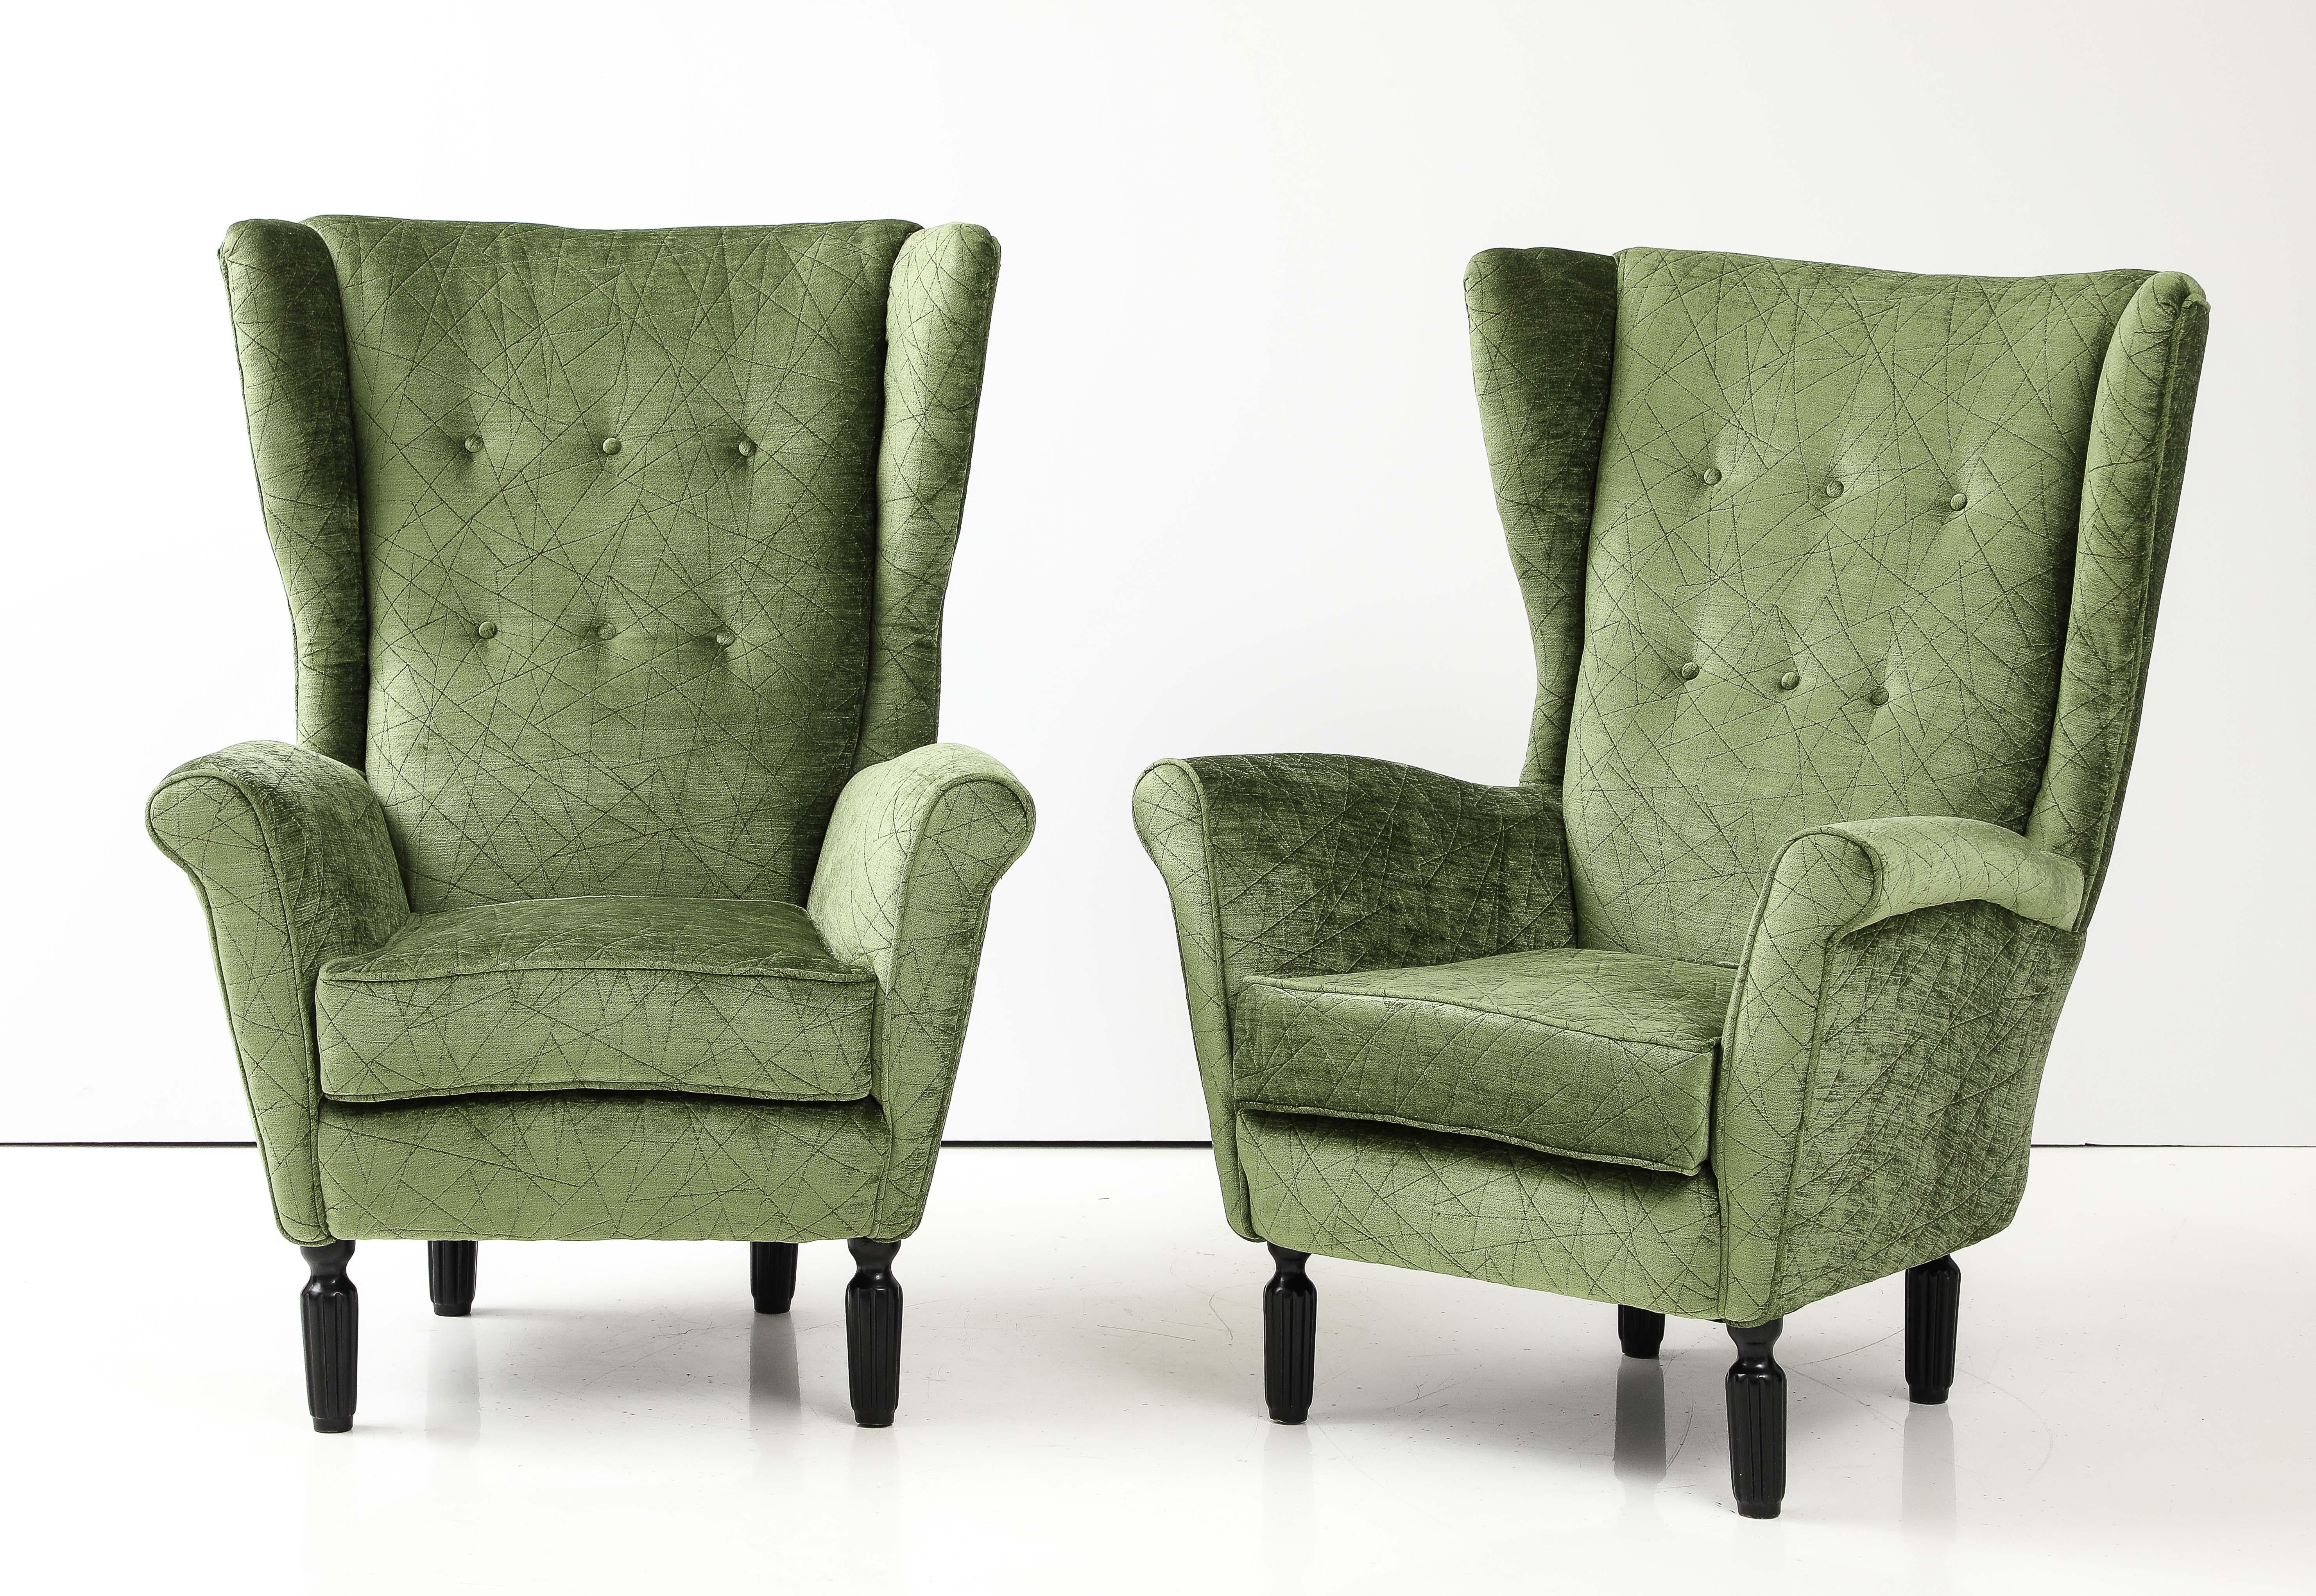 Erstaunliche Paar 1950's Flügelrücken italienische Lounge-Stühle neu gepolstert in Samt Stoff, vollständig restauriert und neu gepolstert, mit geringem Verschleiß und Patina aufgrund von Alter und Nutzung.